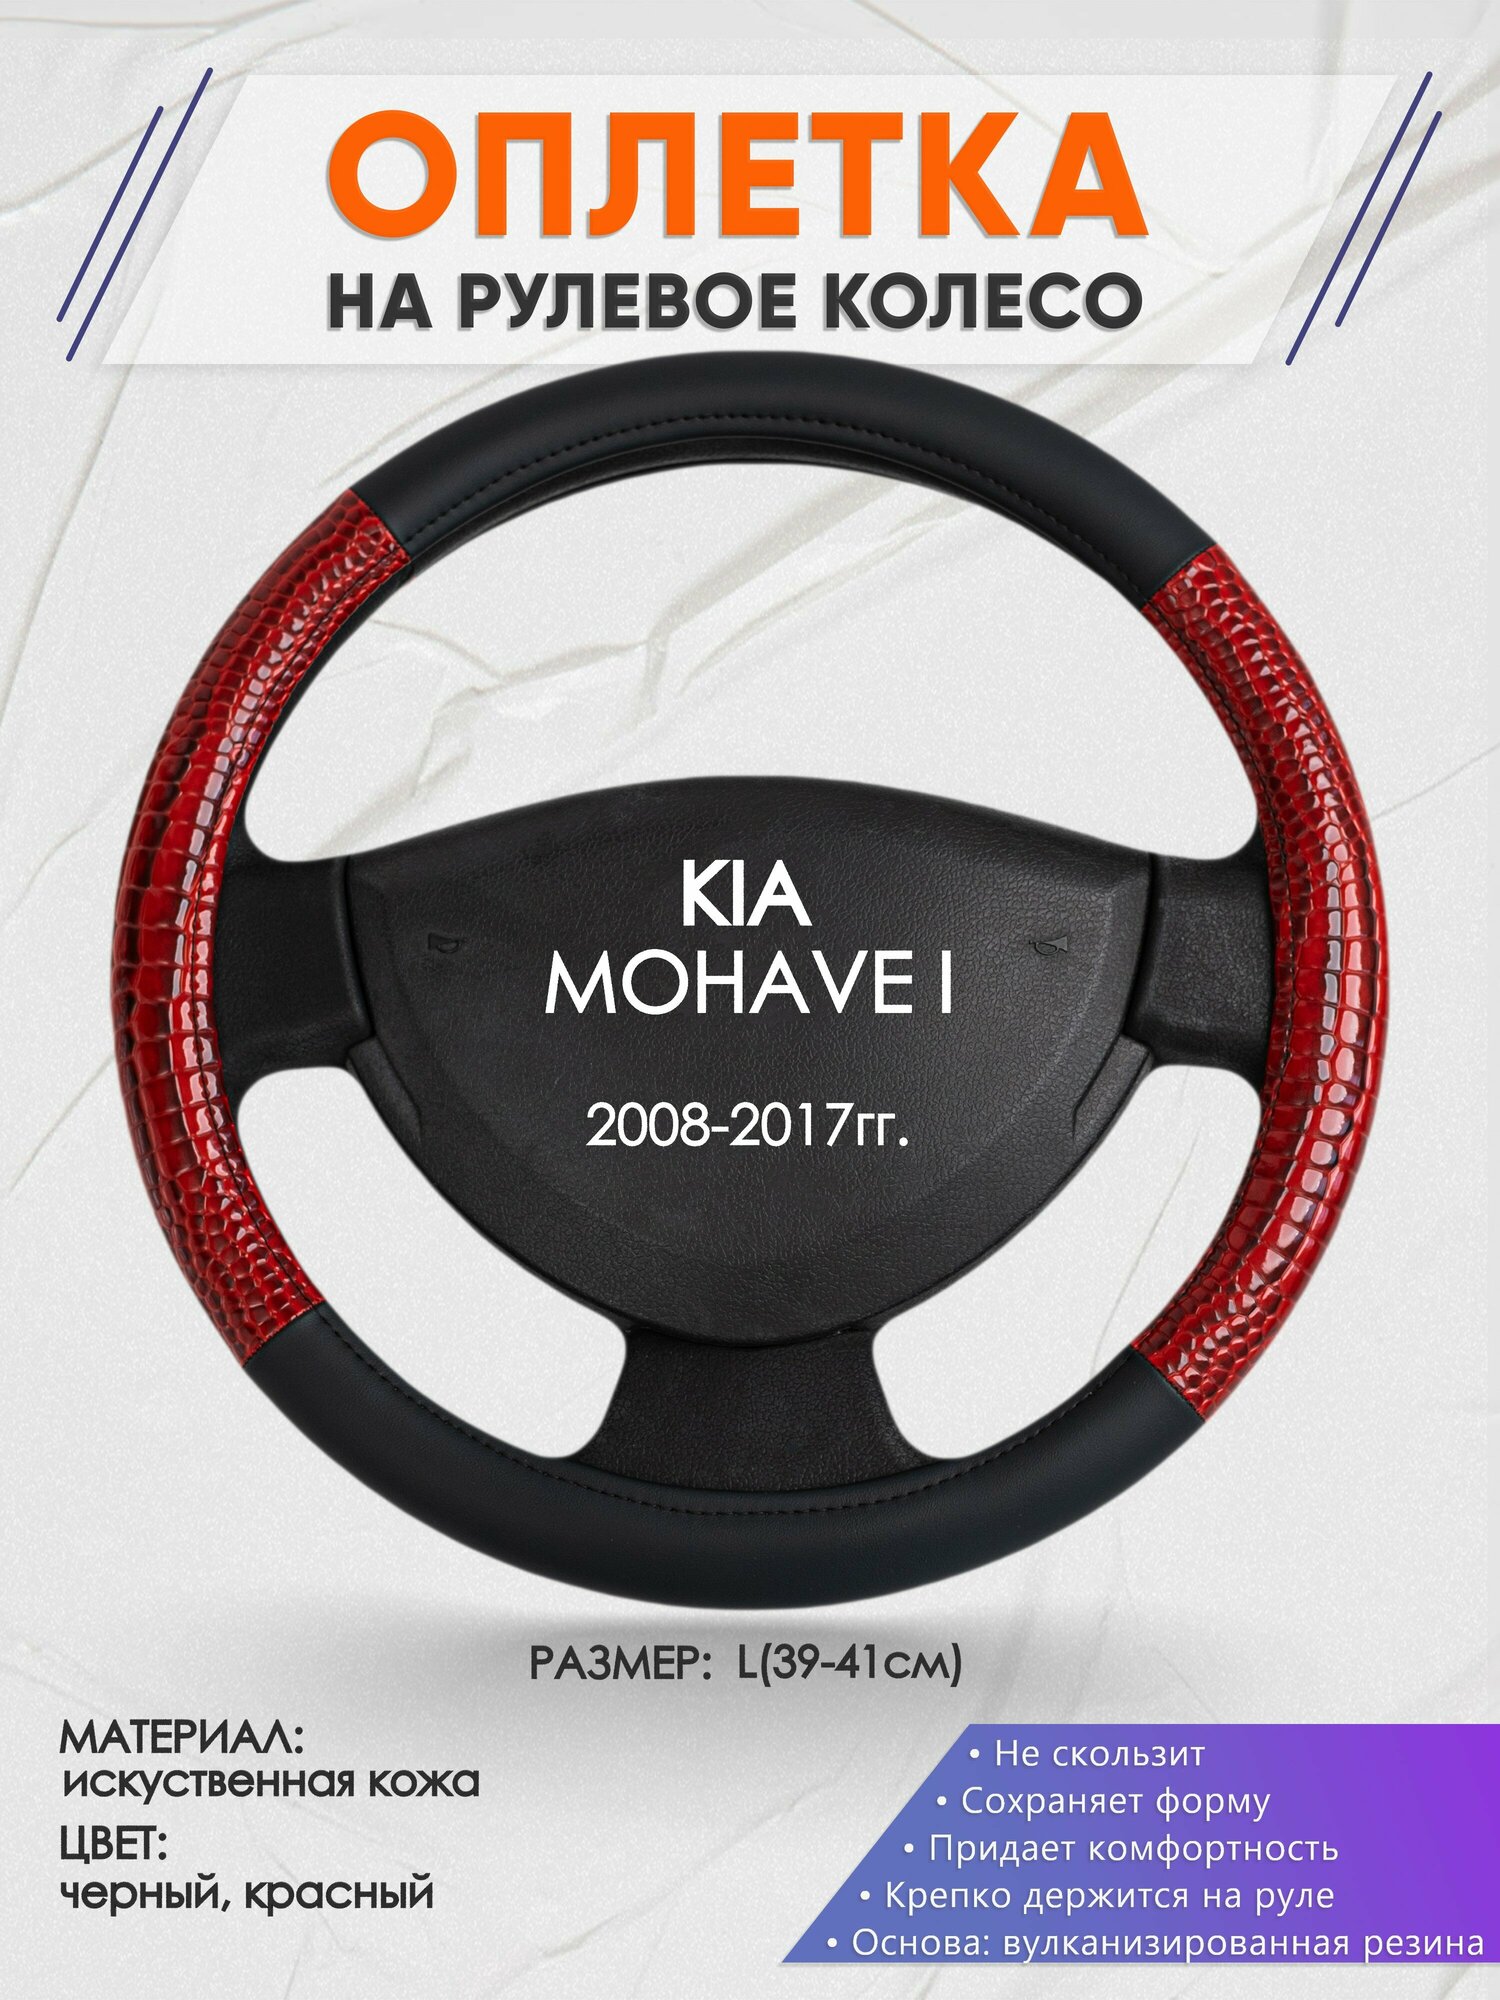 Оплетка на руль для KIA MOHAVE I(Киа Мохаве) 2008-2017, L(39-41см), Искусственная кожа 16